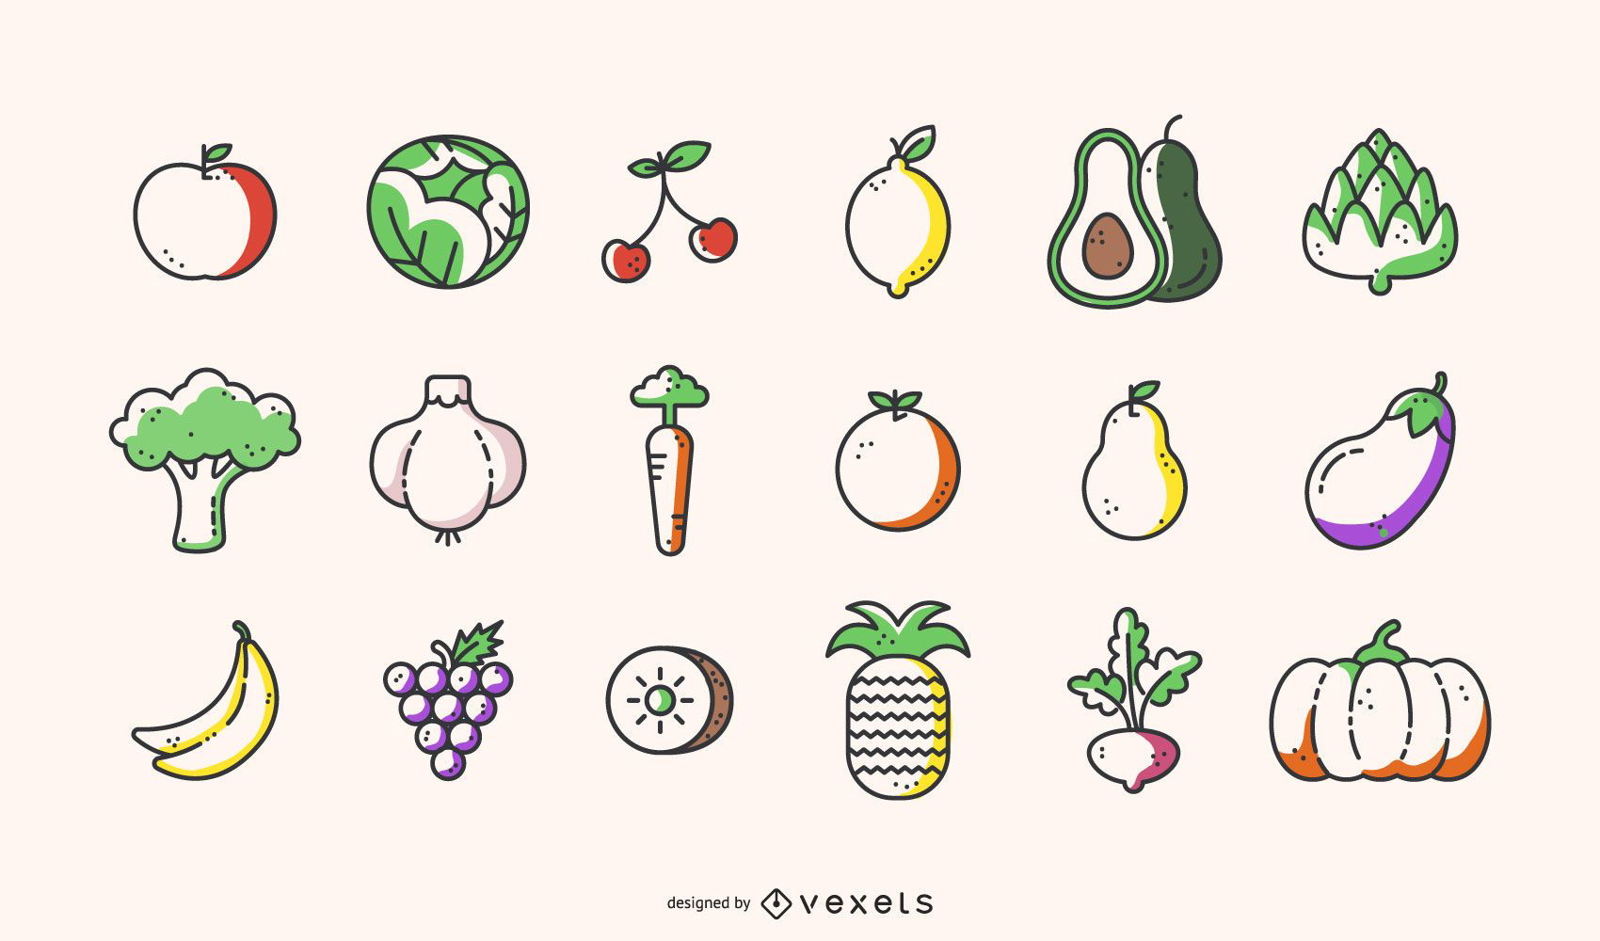 Colecci?n de iconos de frutas y verduras